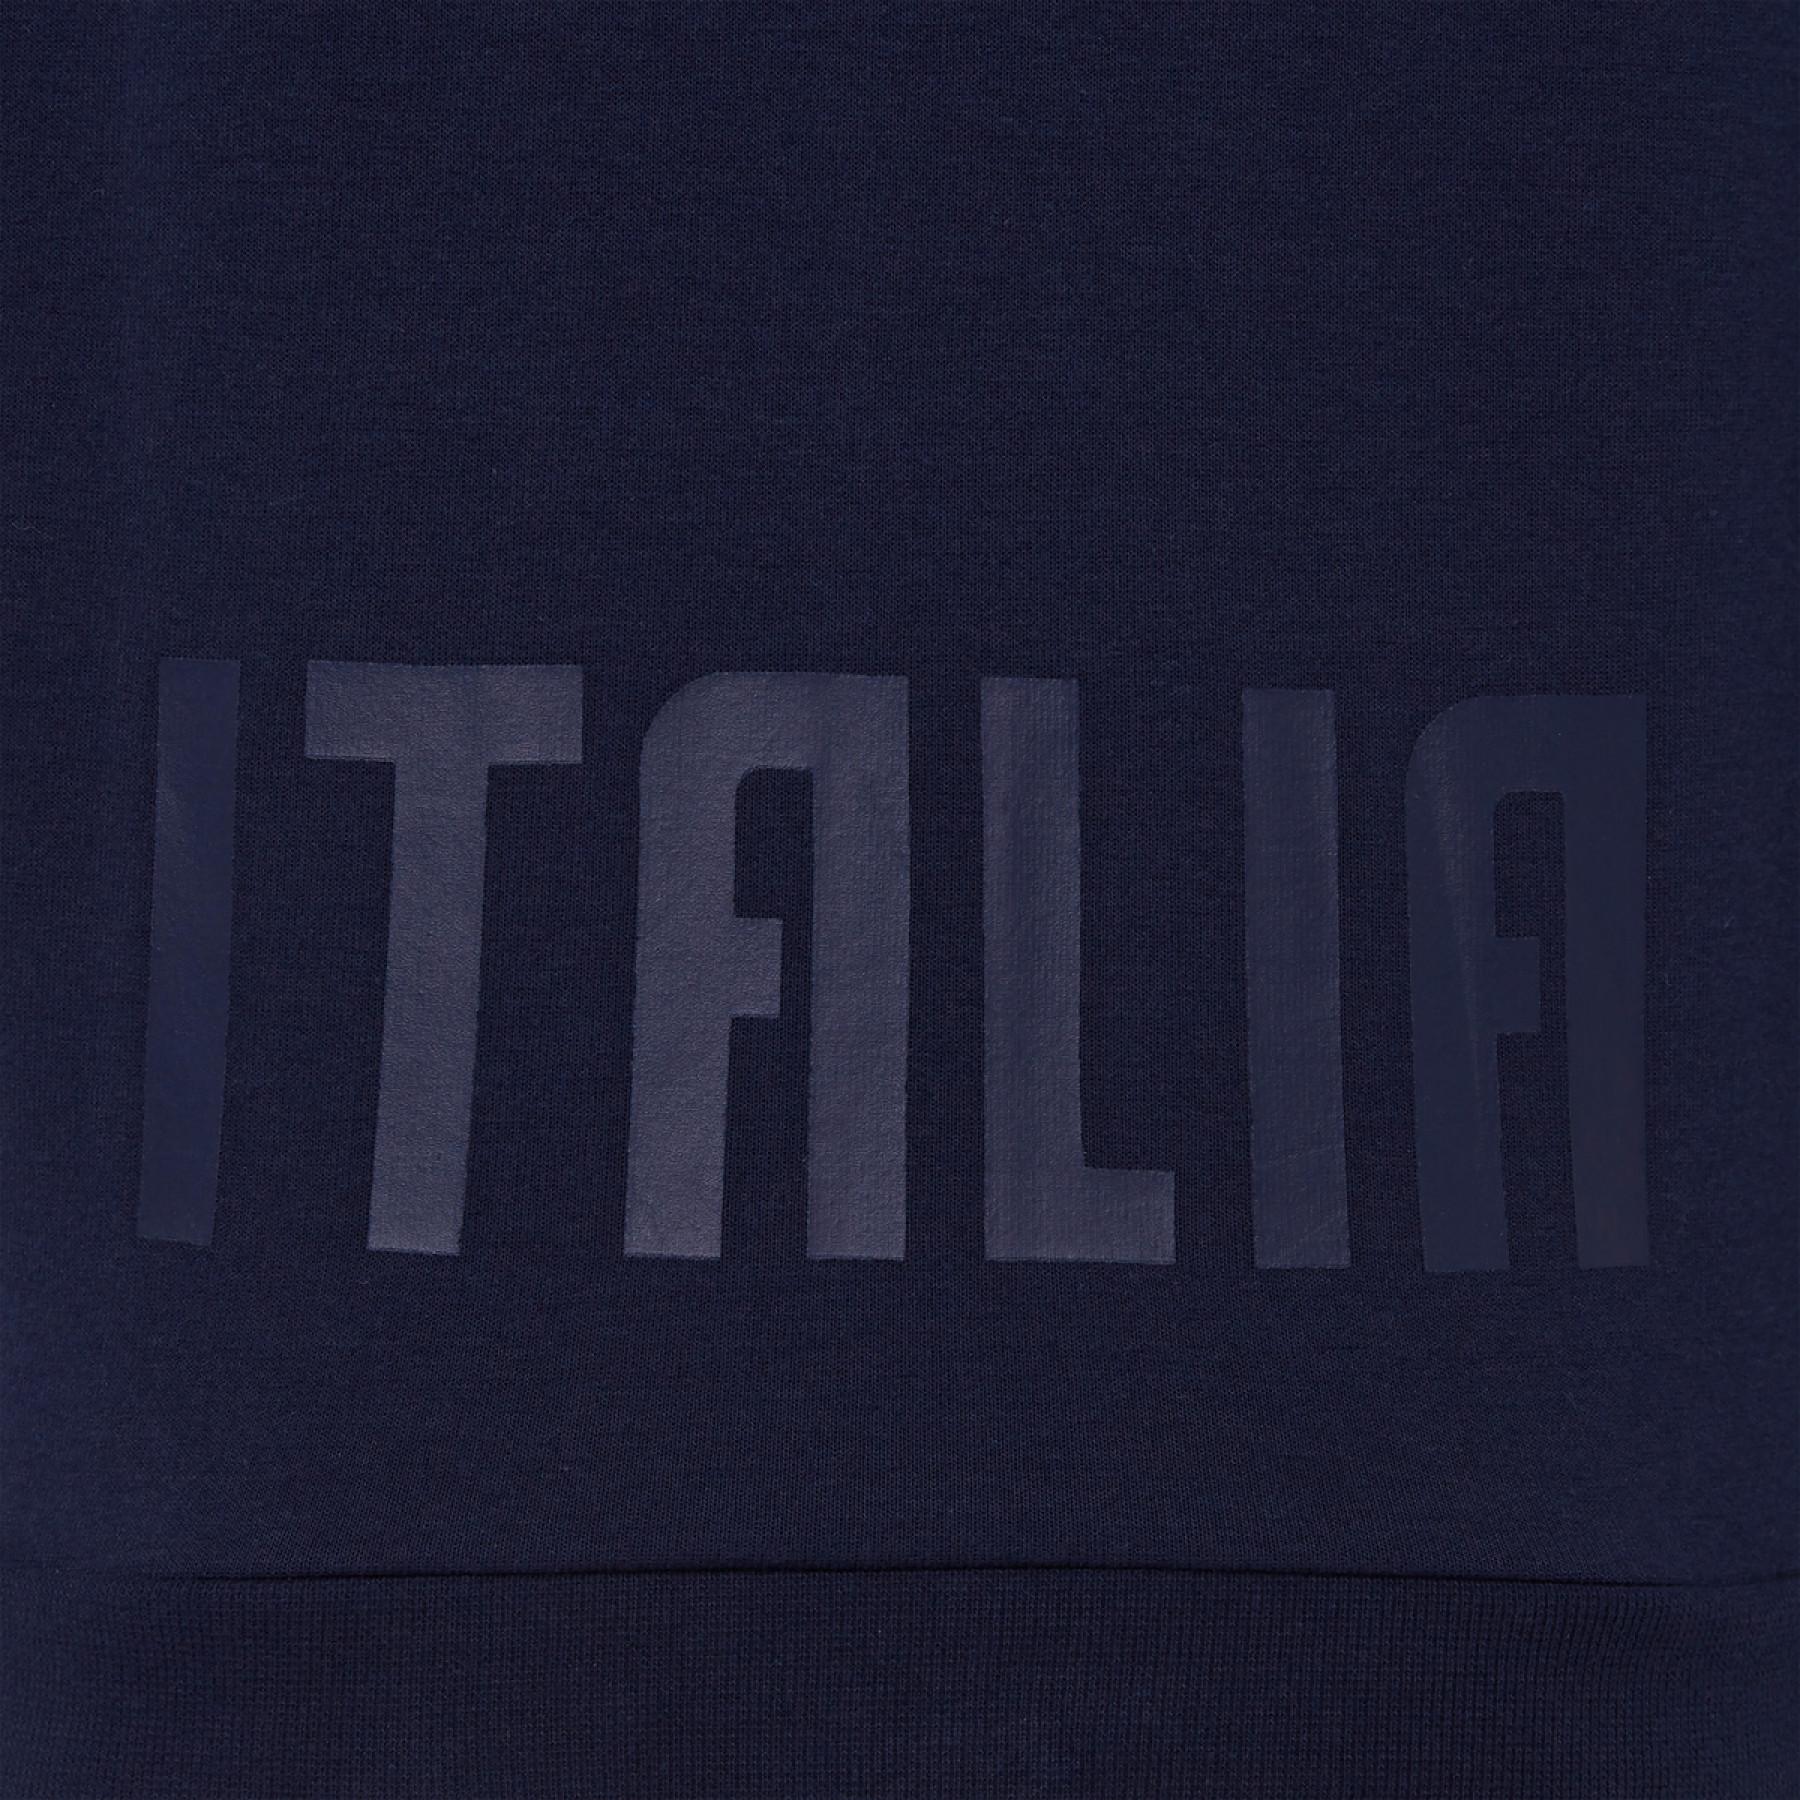 Travel Sweatshirt Italie rubgy 2020/21